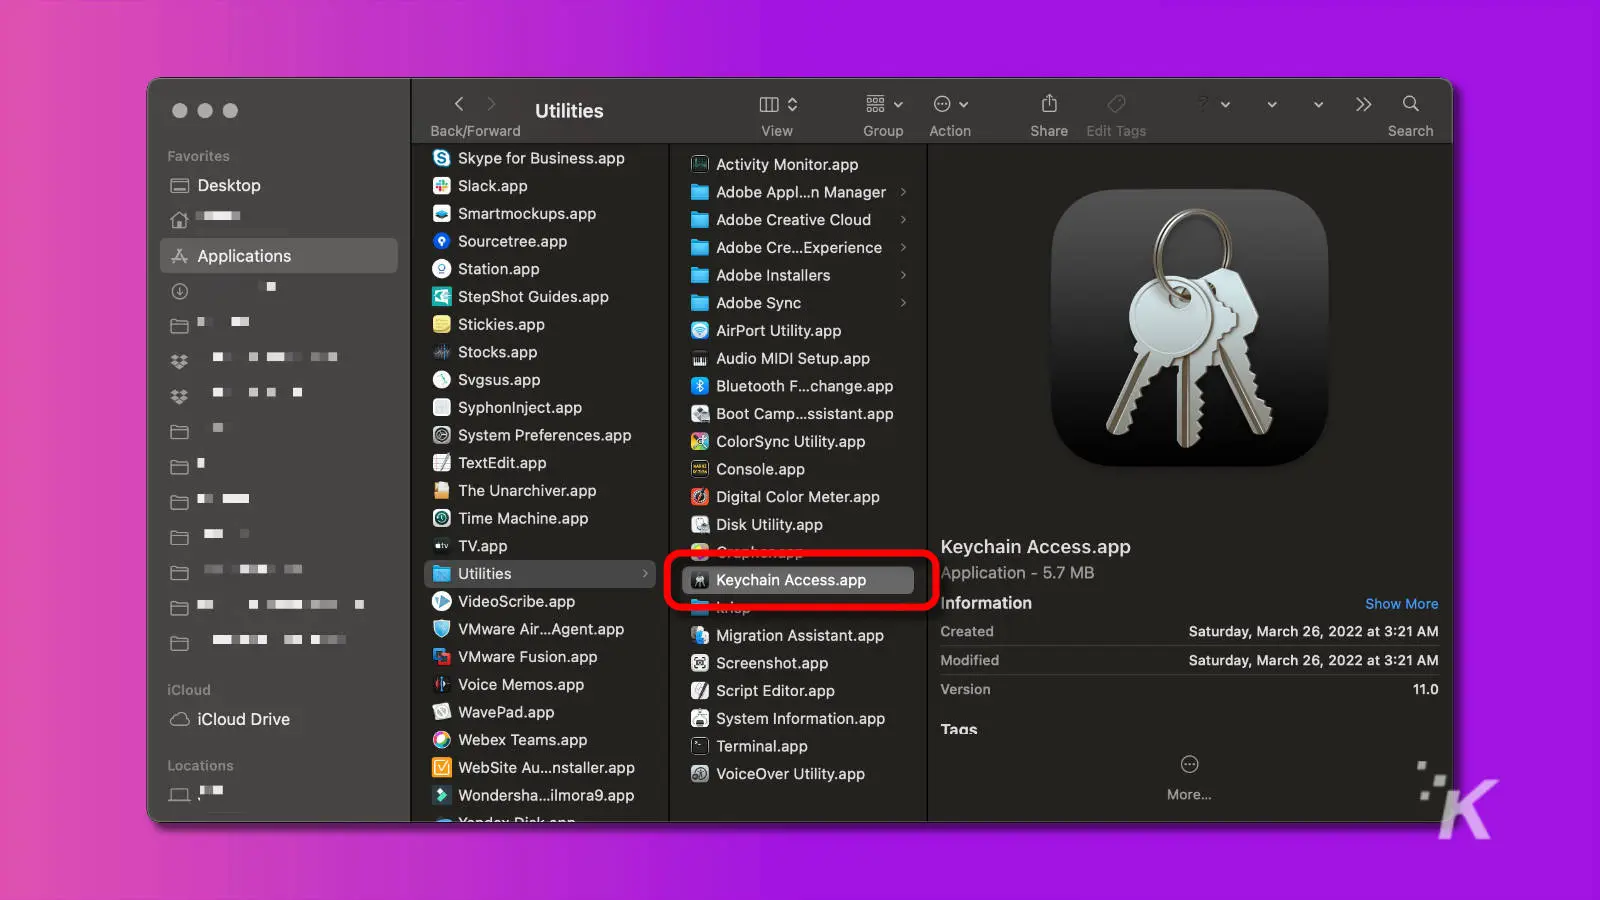 captura de pantalla del buscador de macos que muestra la aplicación de acceso al llavero